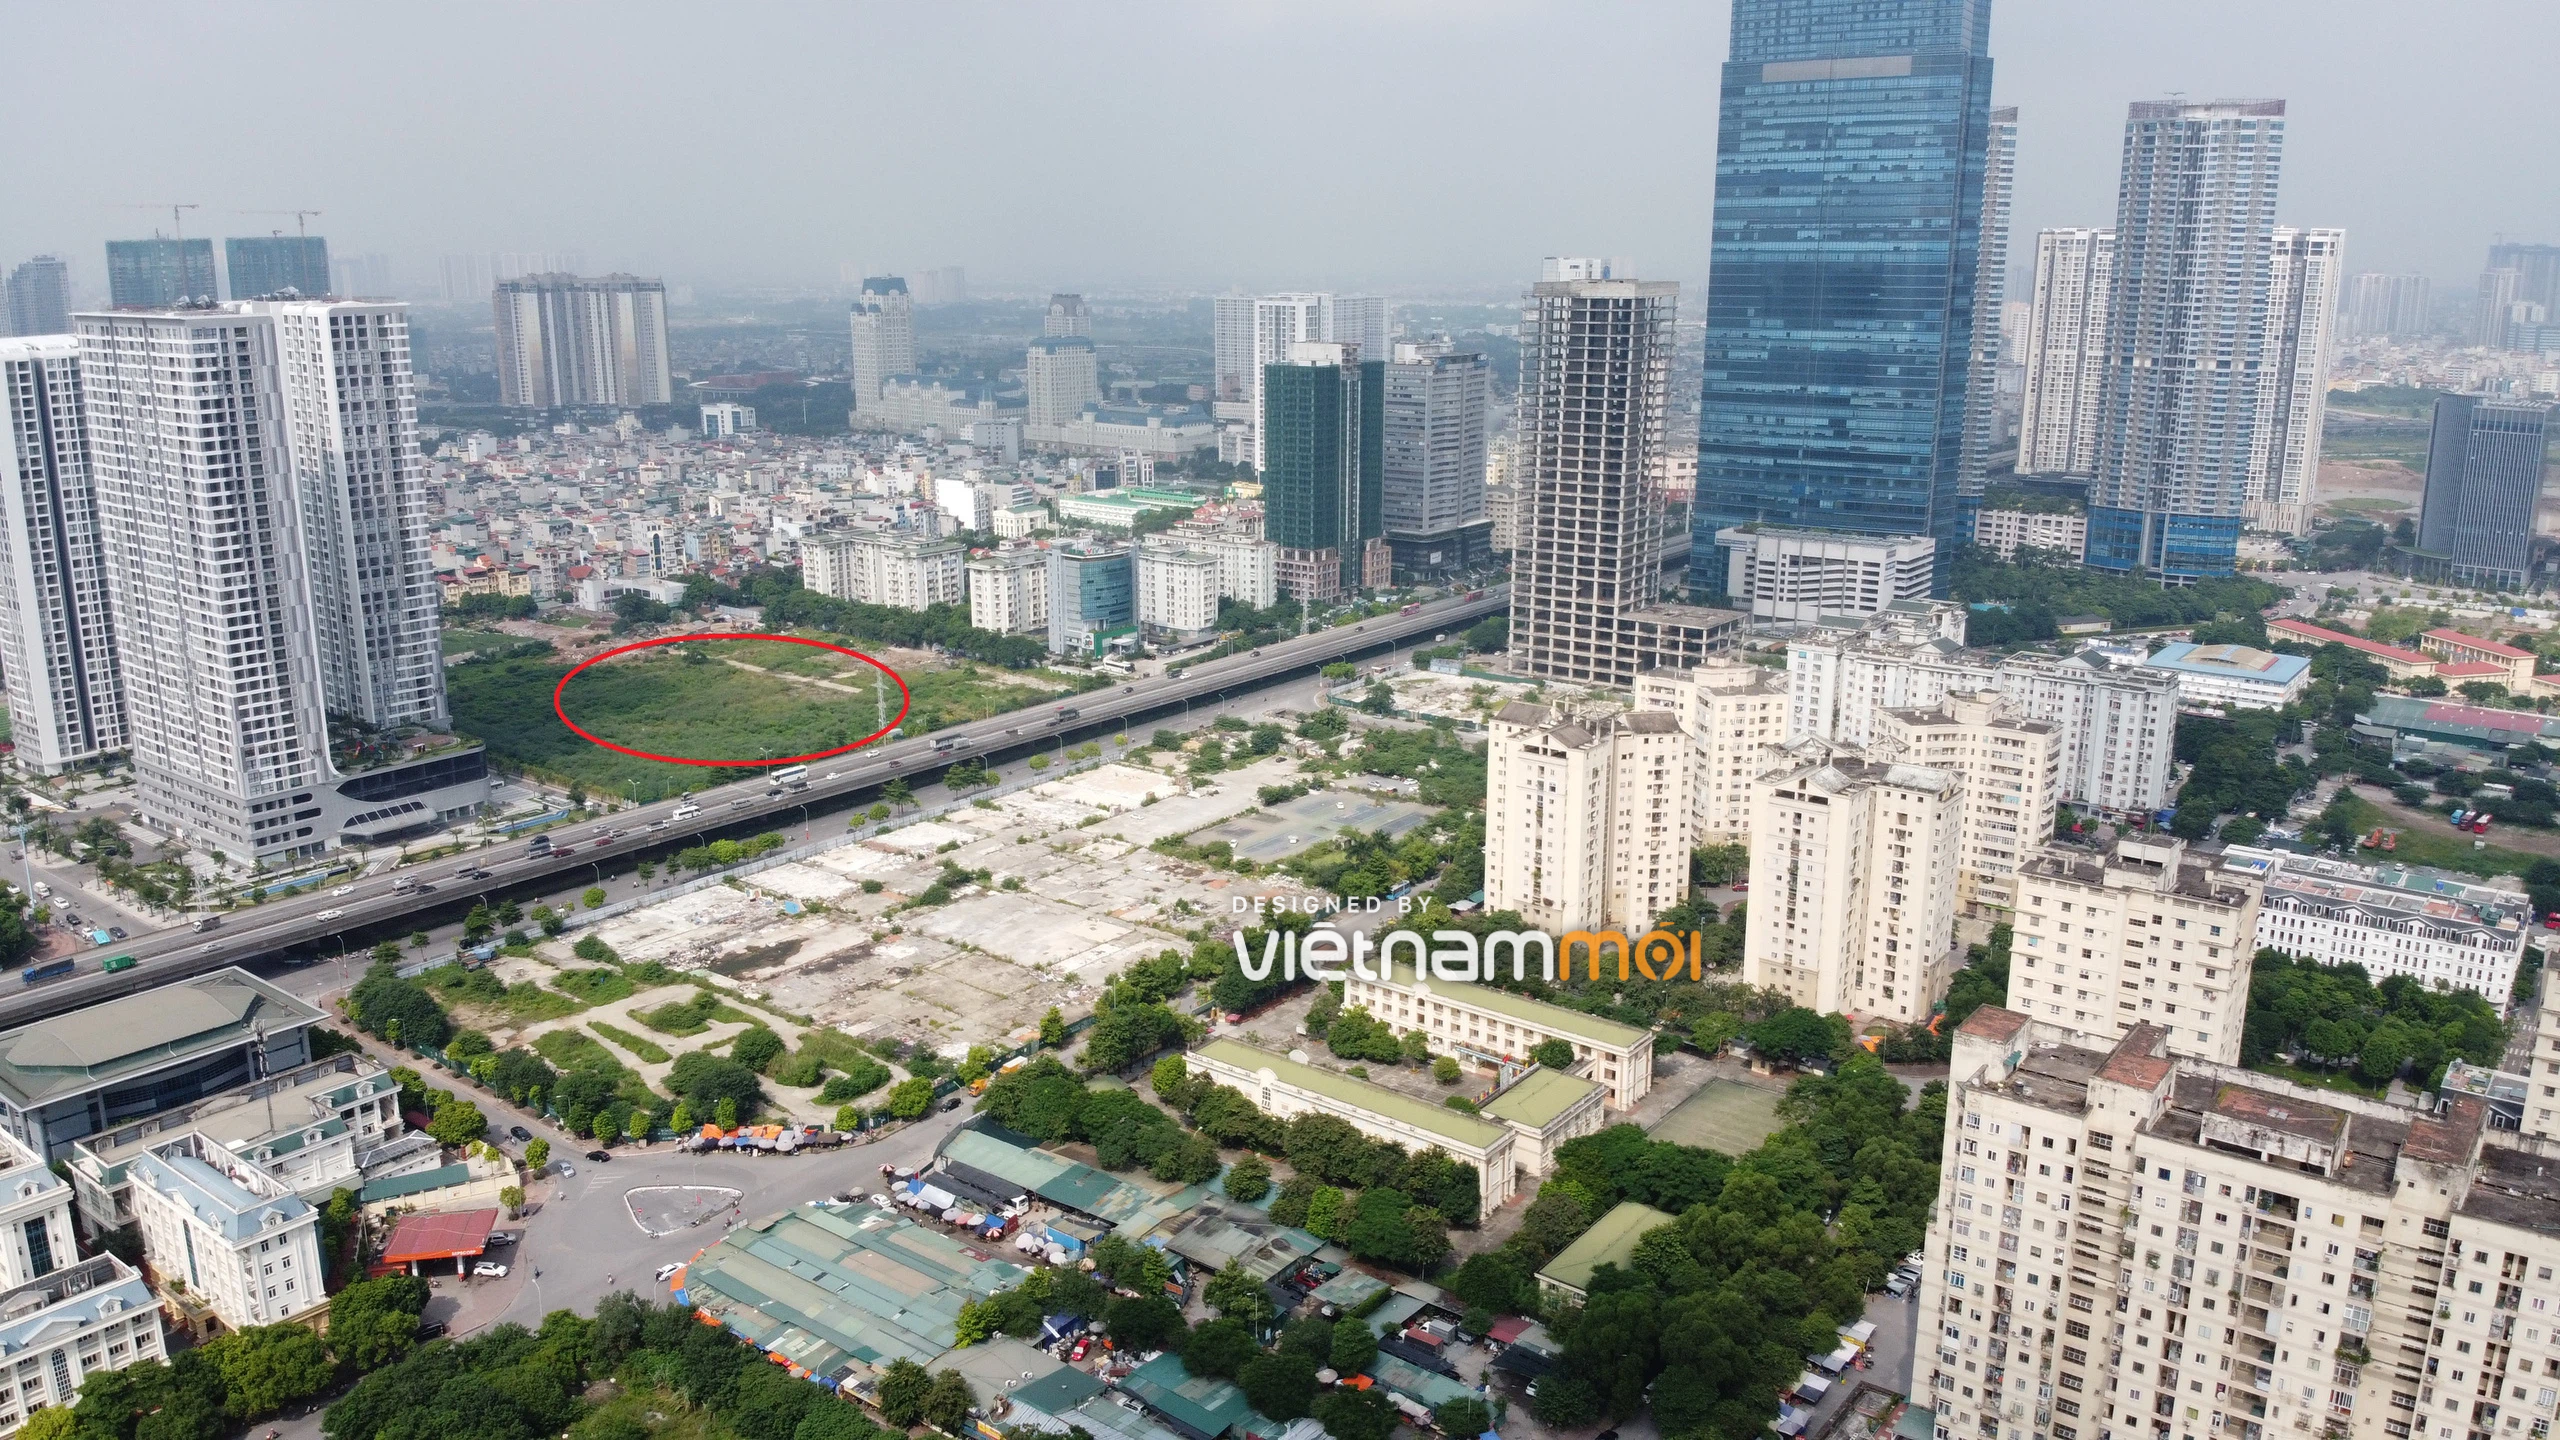 Hà Nội mạnh tay với dự án bỏ hoang, Kinh Bắc có còn cơ hội làm tòa nhà cao tầng nhất Việt Nam, vượt cả Landmark 81? - Ảnh 1.